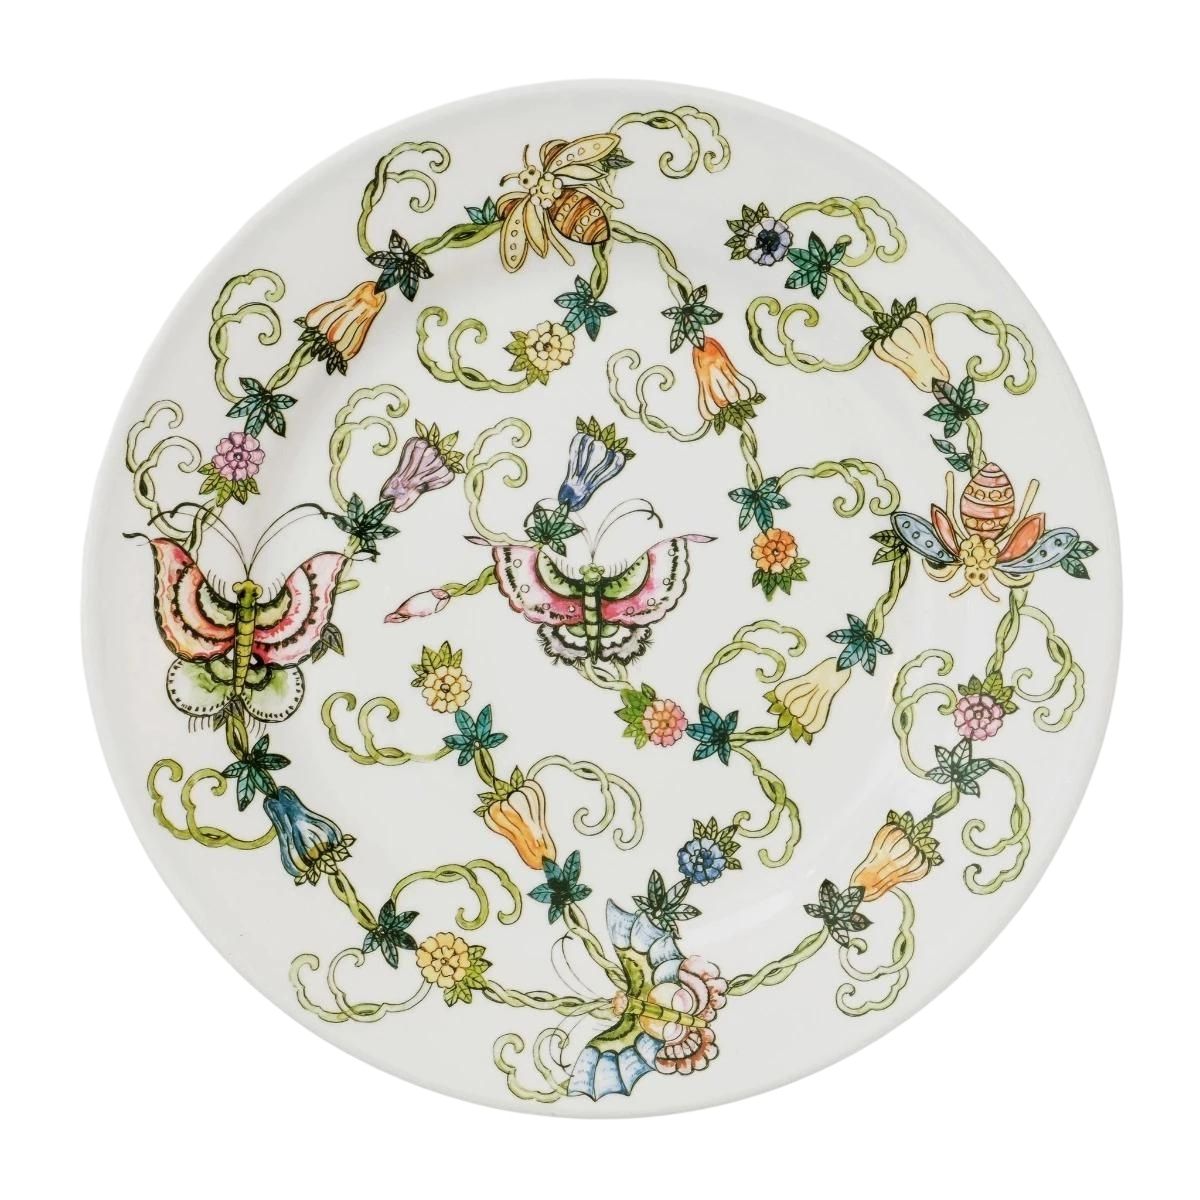 Butterfly & Bees Melamine Dinner Plates, Set of 4-Bespoke Designs